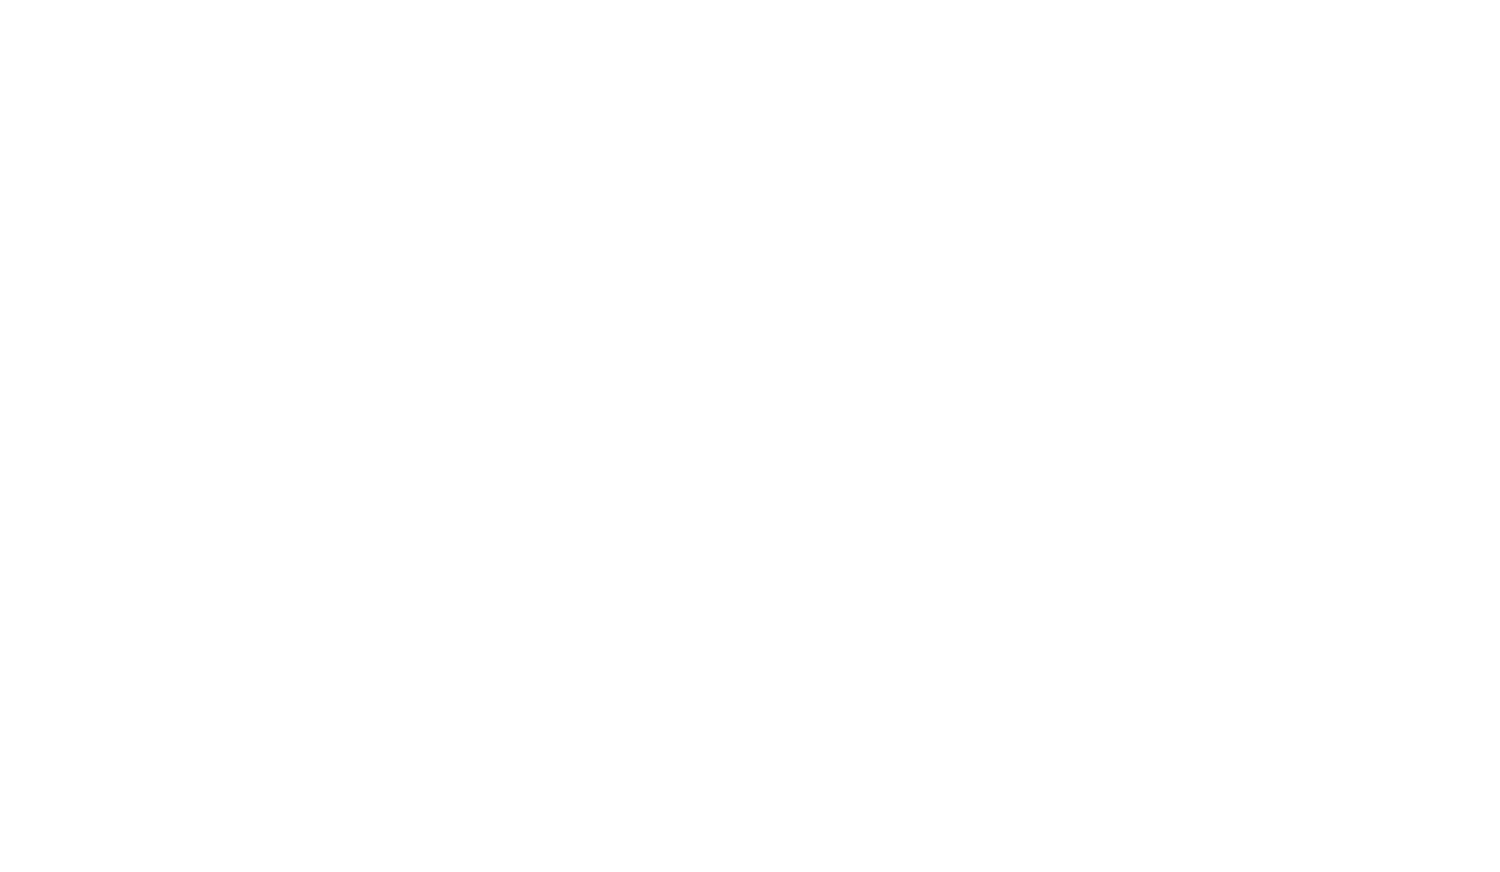 EpicHTX